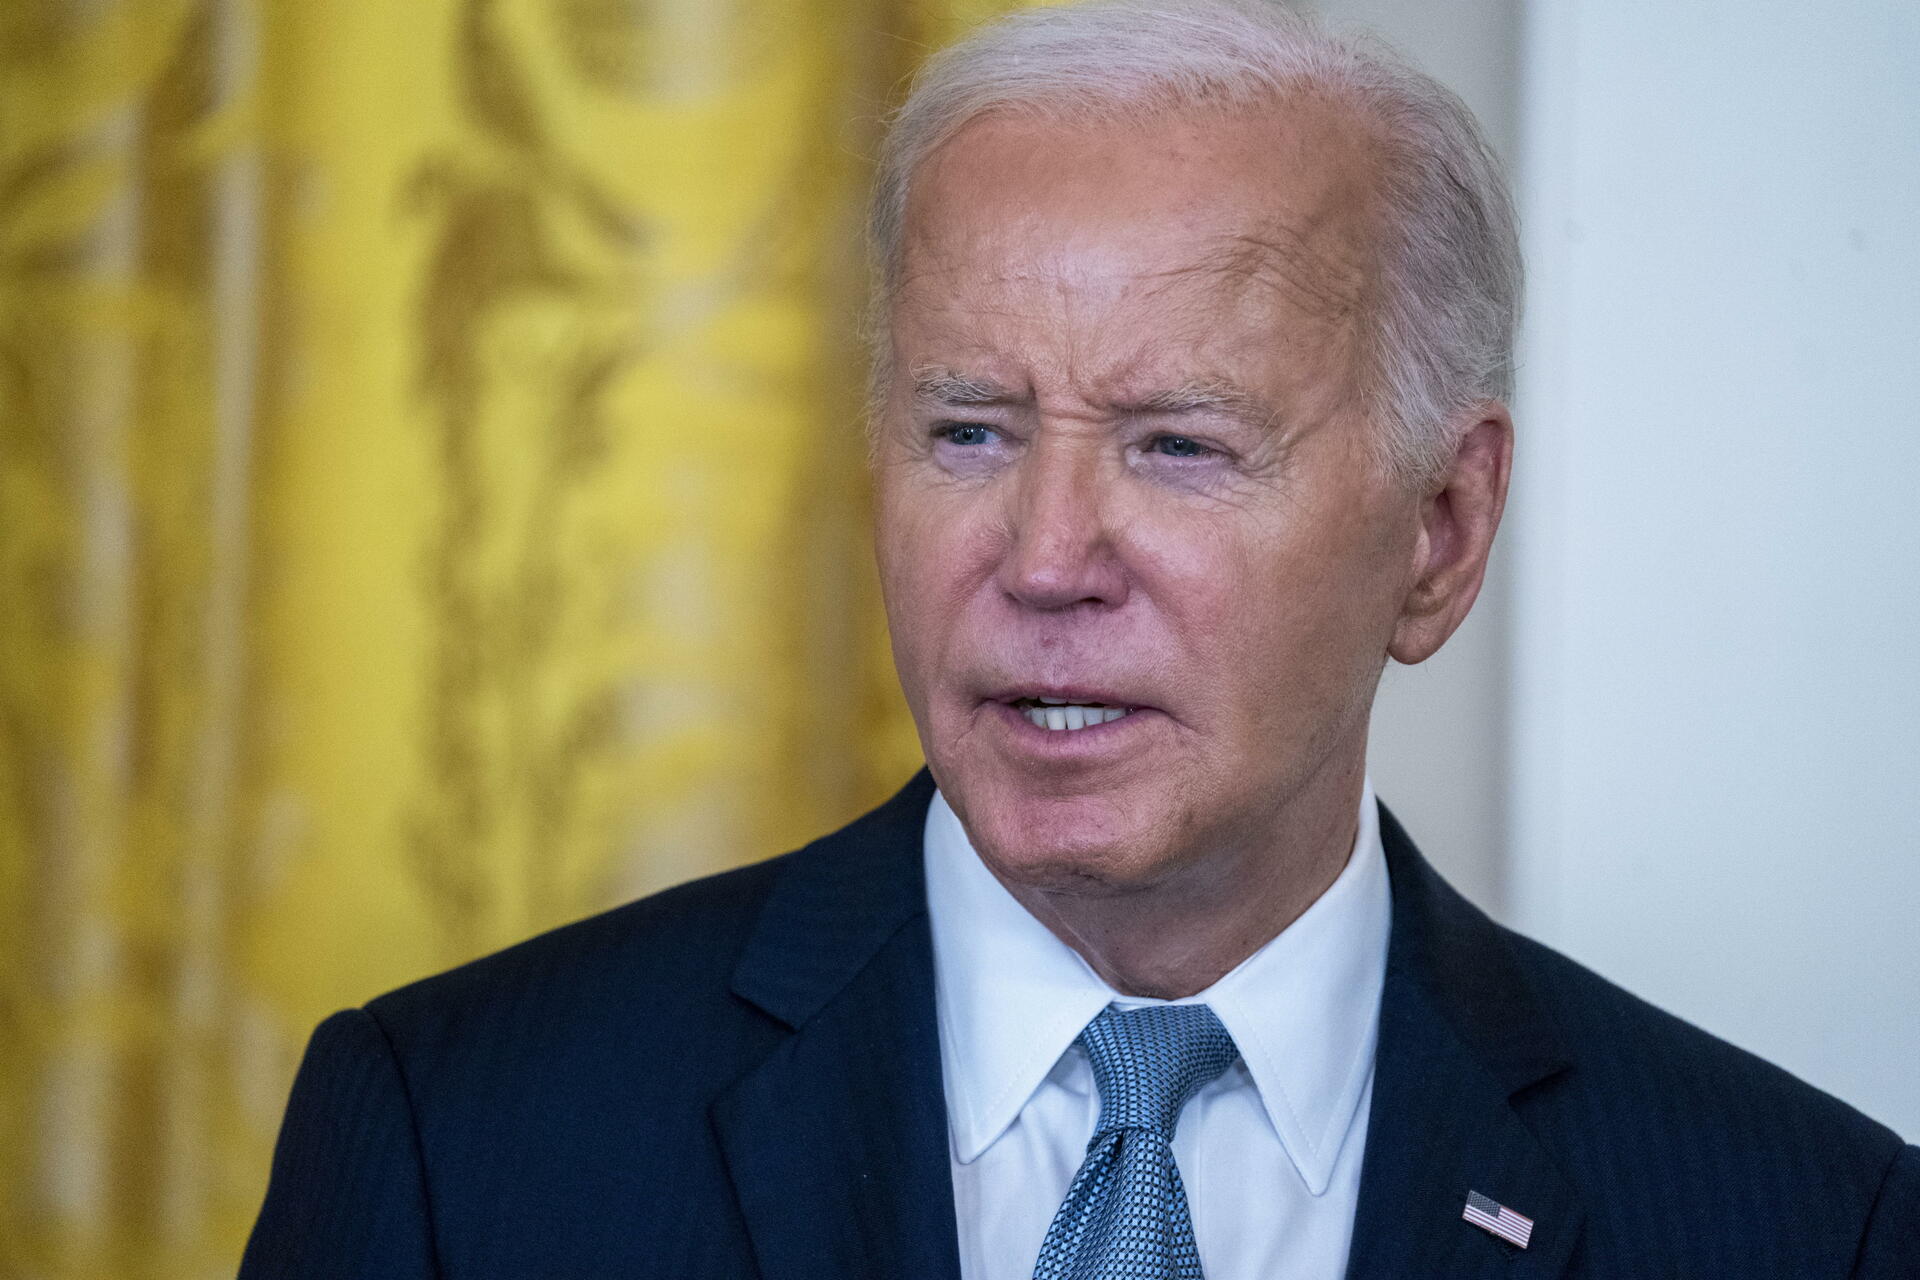 Joe Biden rechaza someterse a evaluación médica independiente